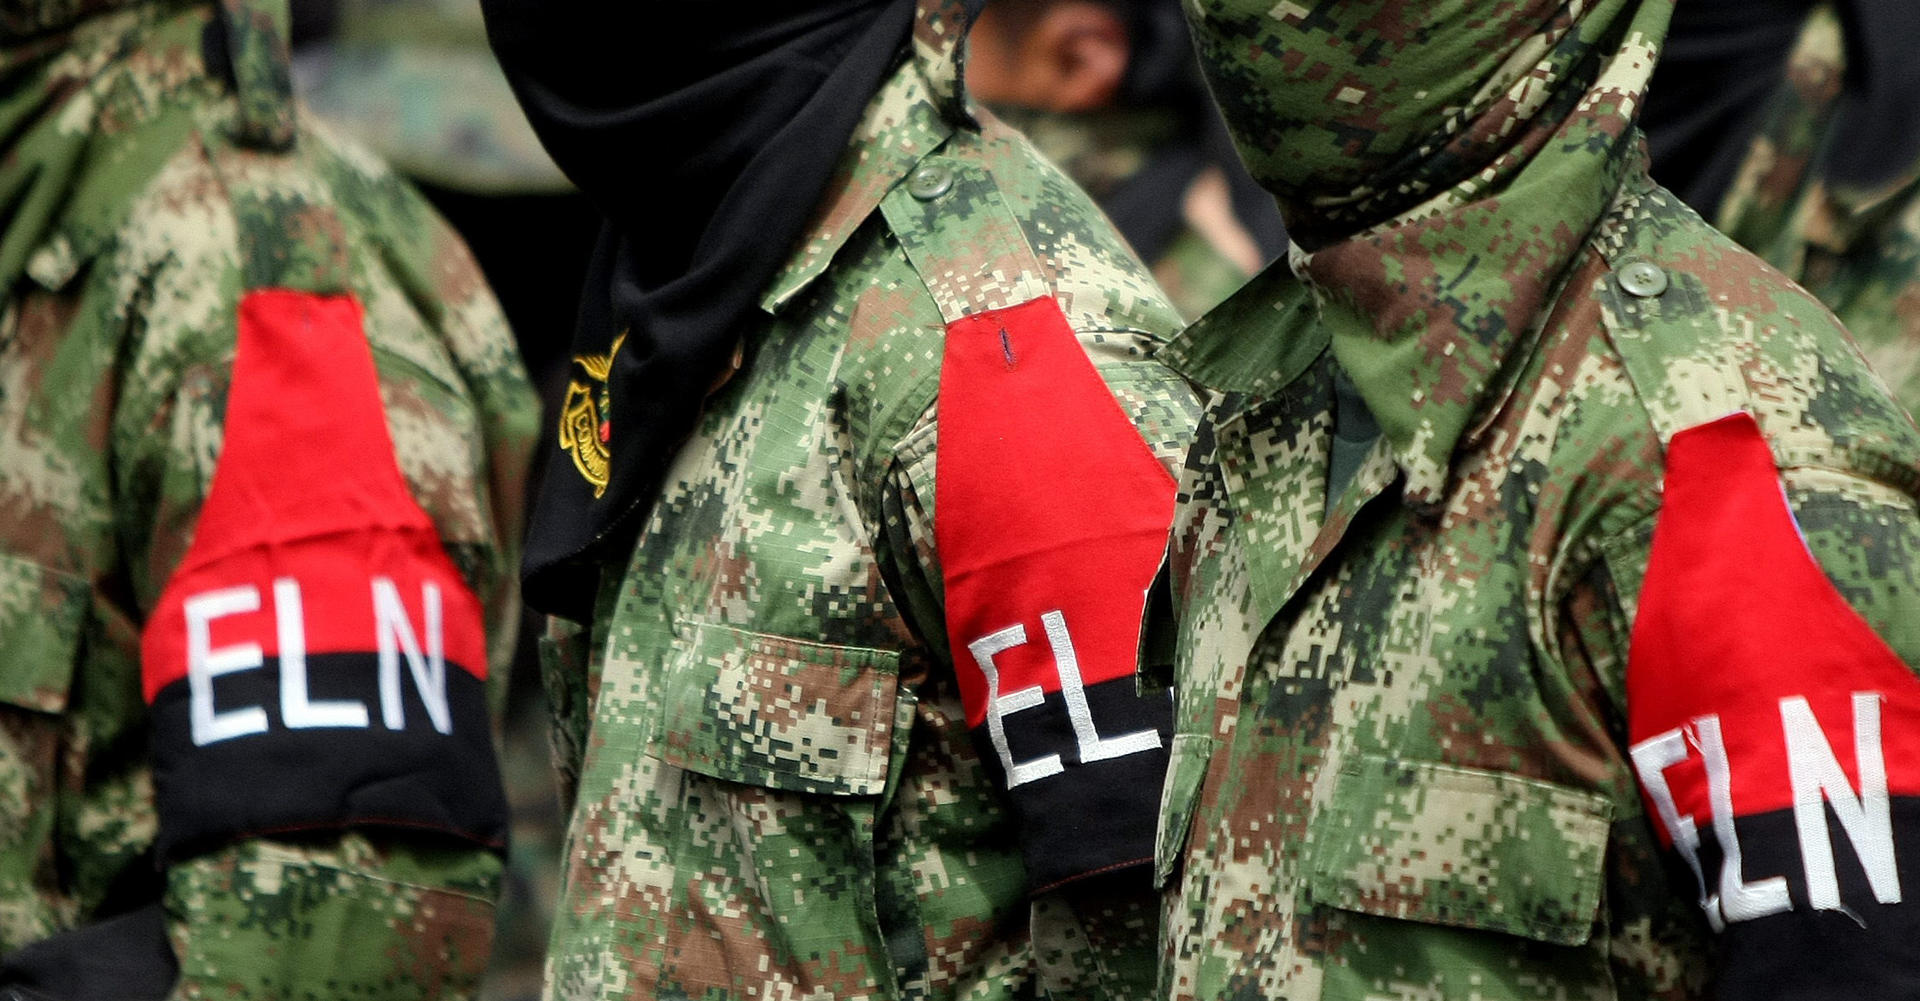 Vista de miembros de la guerrilla del ELN, en una fotografía de archivo. EFE/Christian Escobar Mora